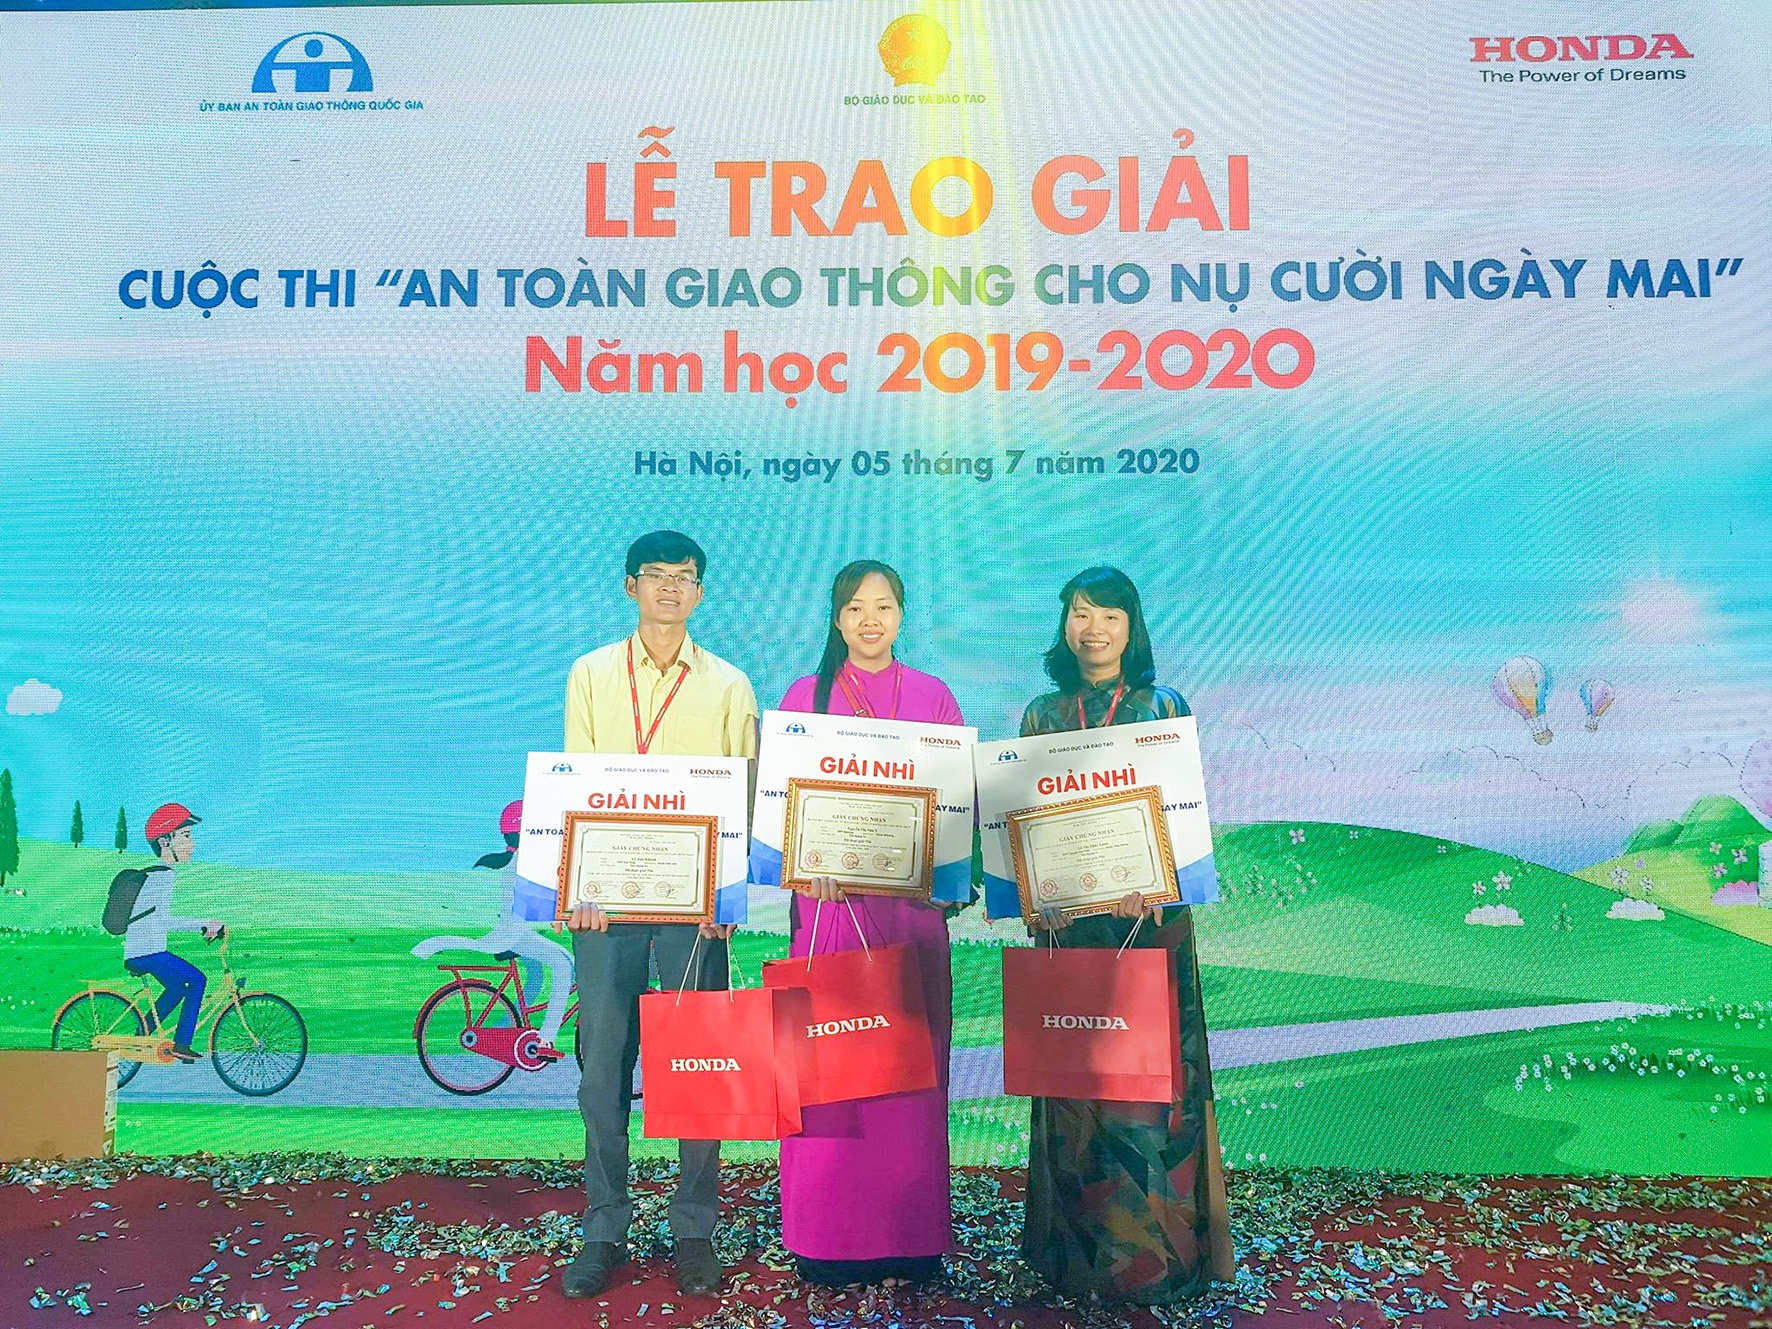 Ba giáo viên Quảng Trị đoạt giải Nhì của cuộc thi- Ảnh: Võ Minh Châu​